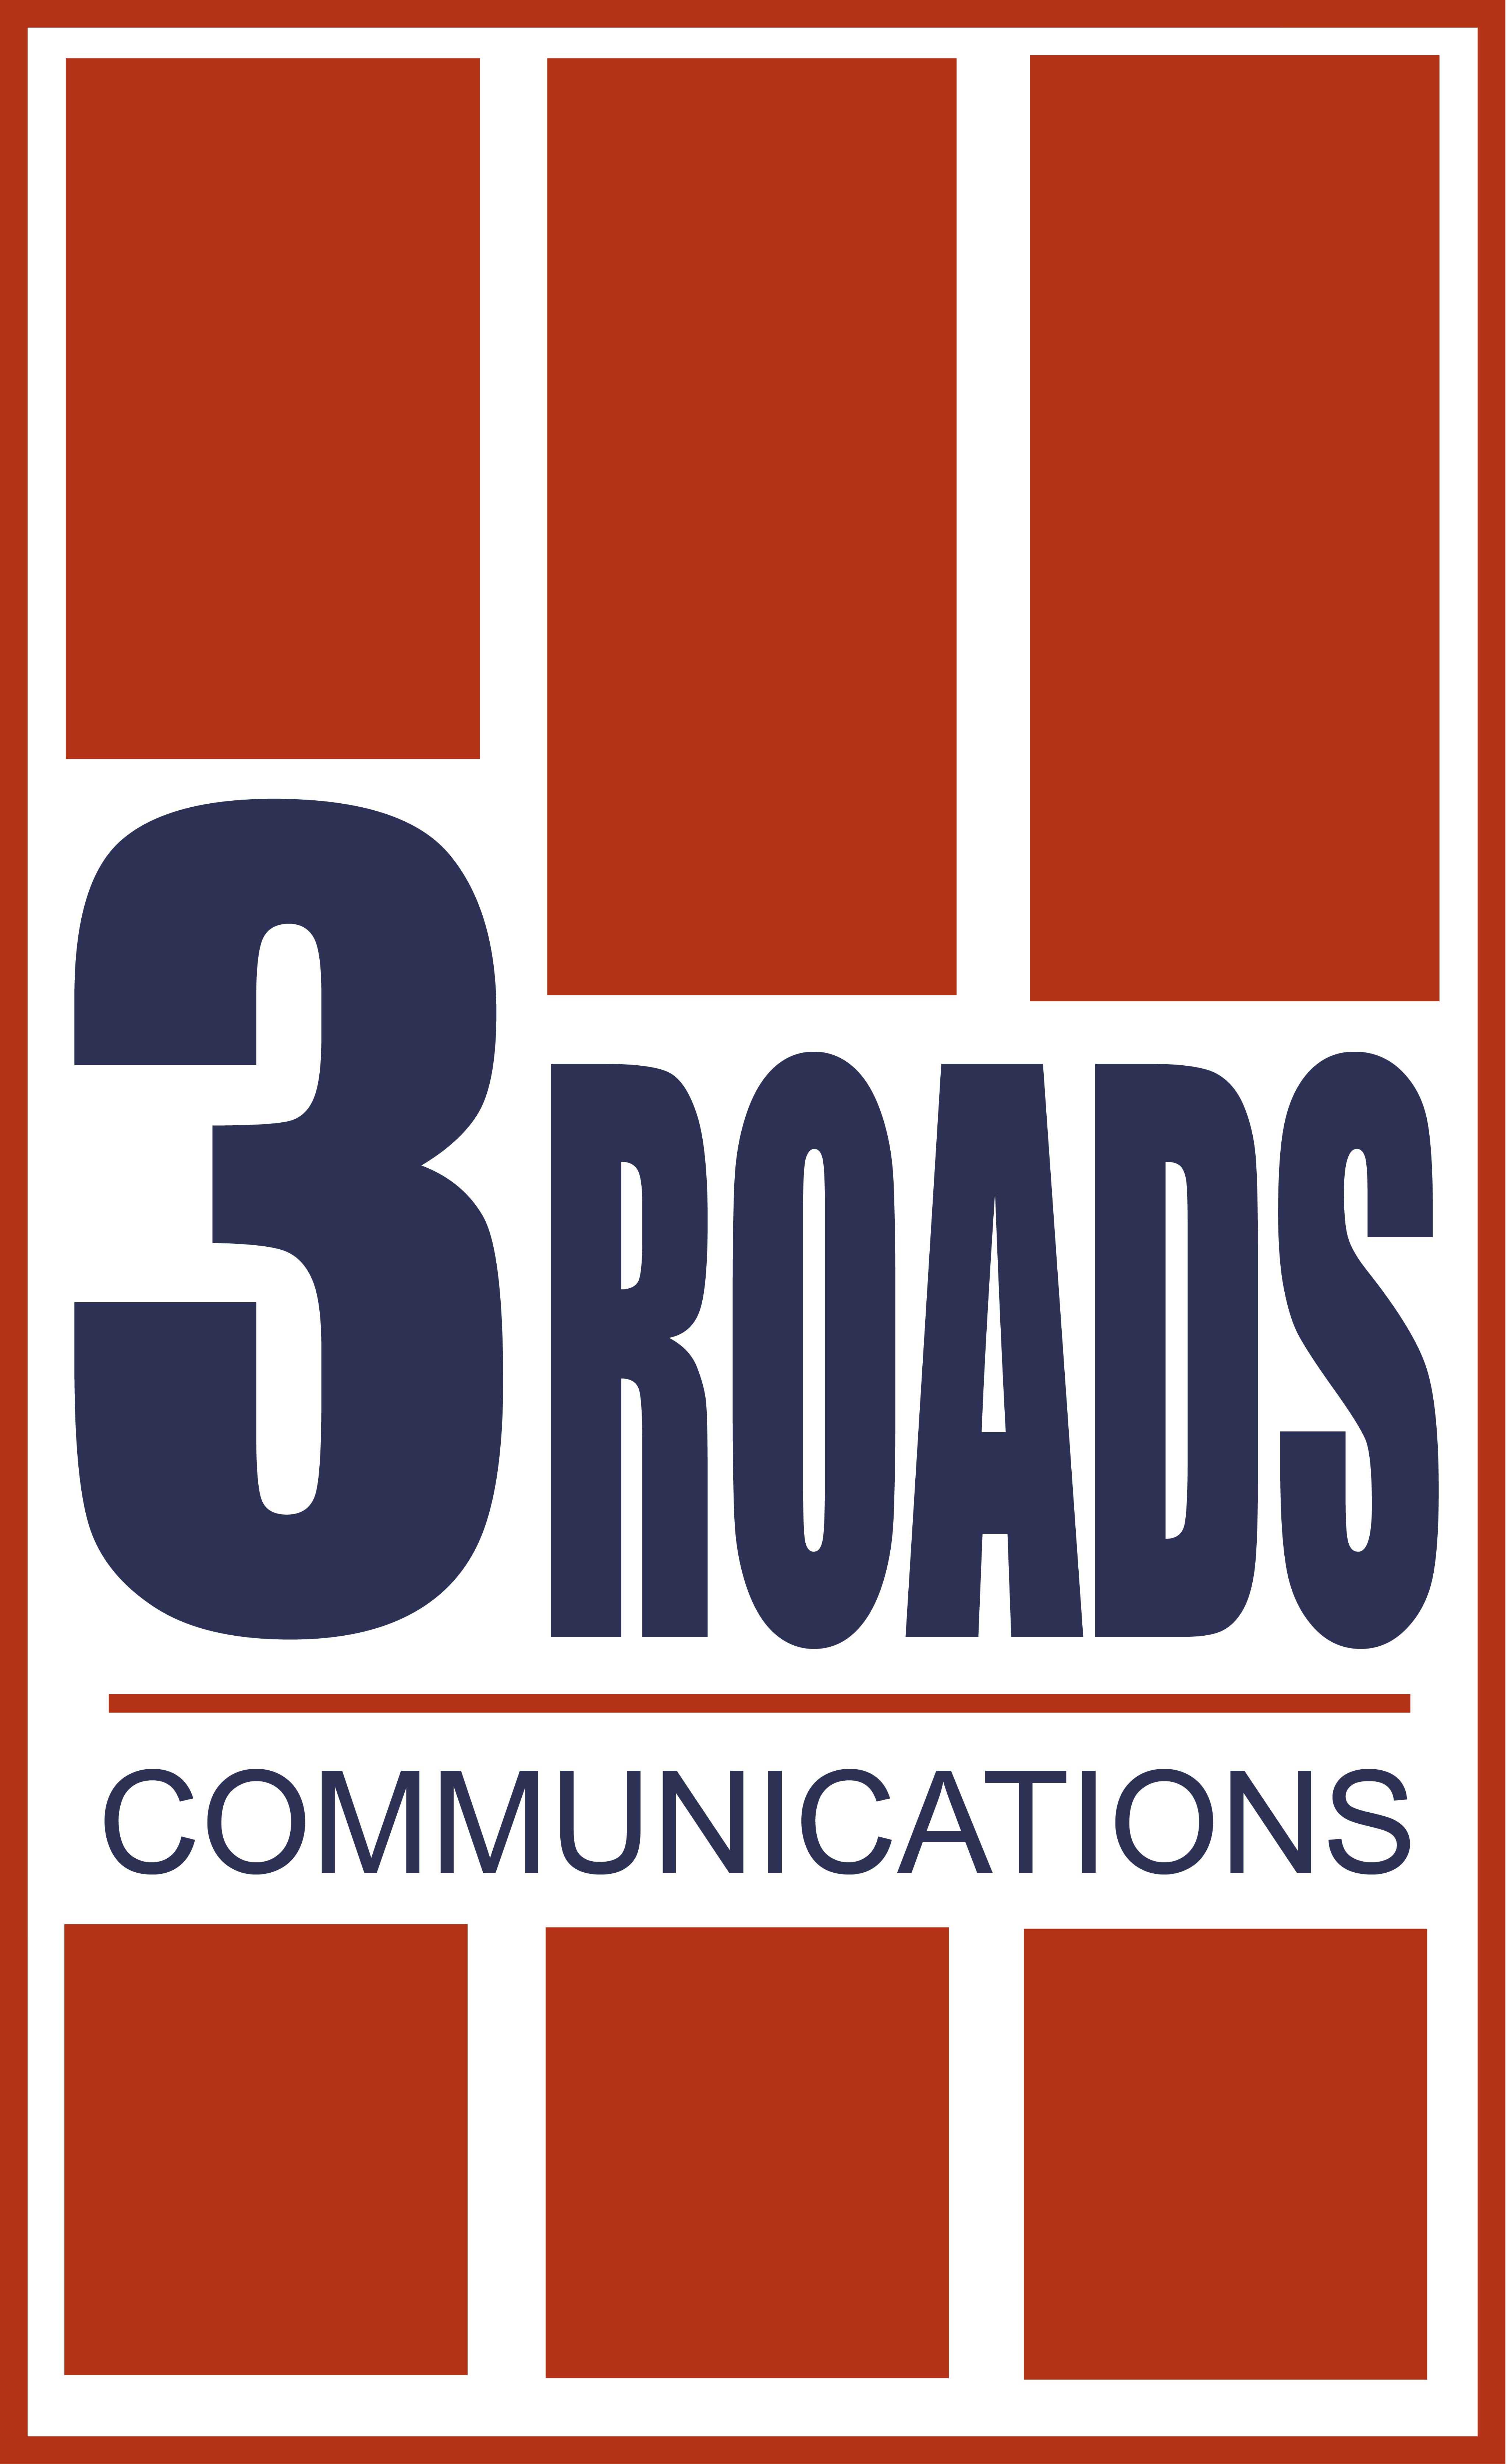 3 Roads Communications